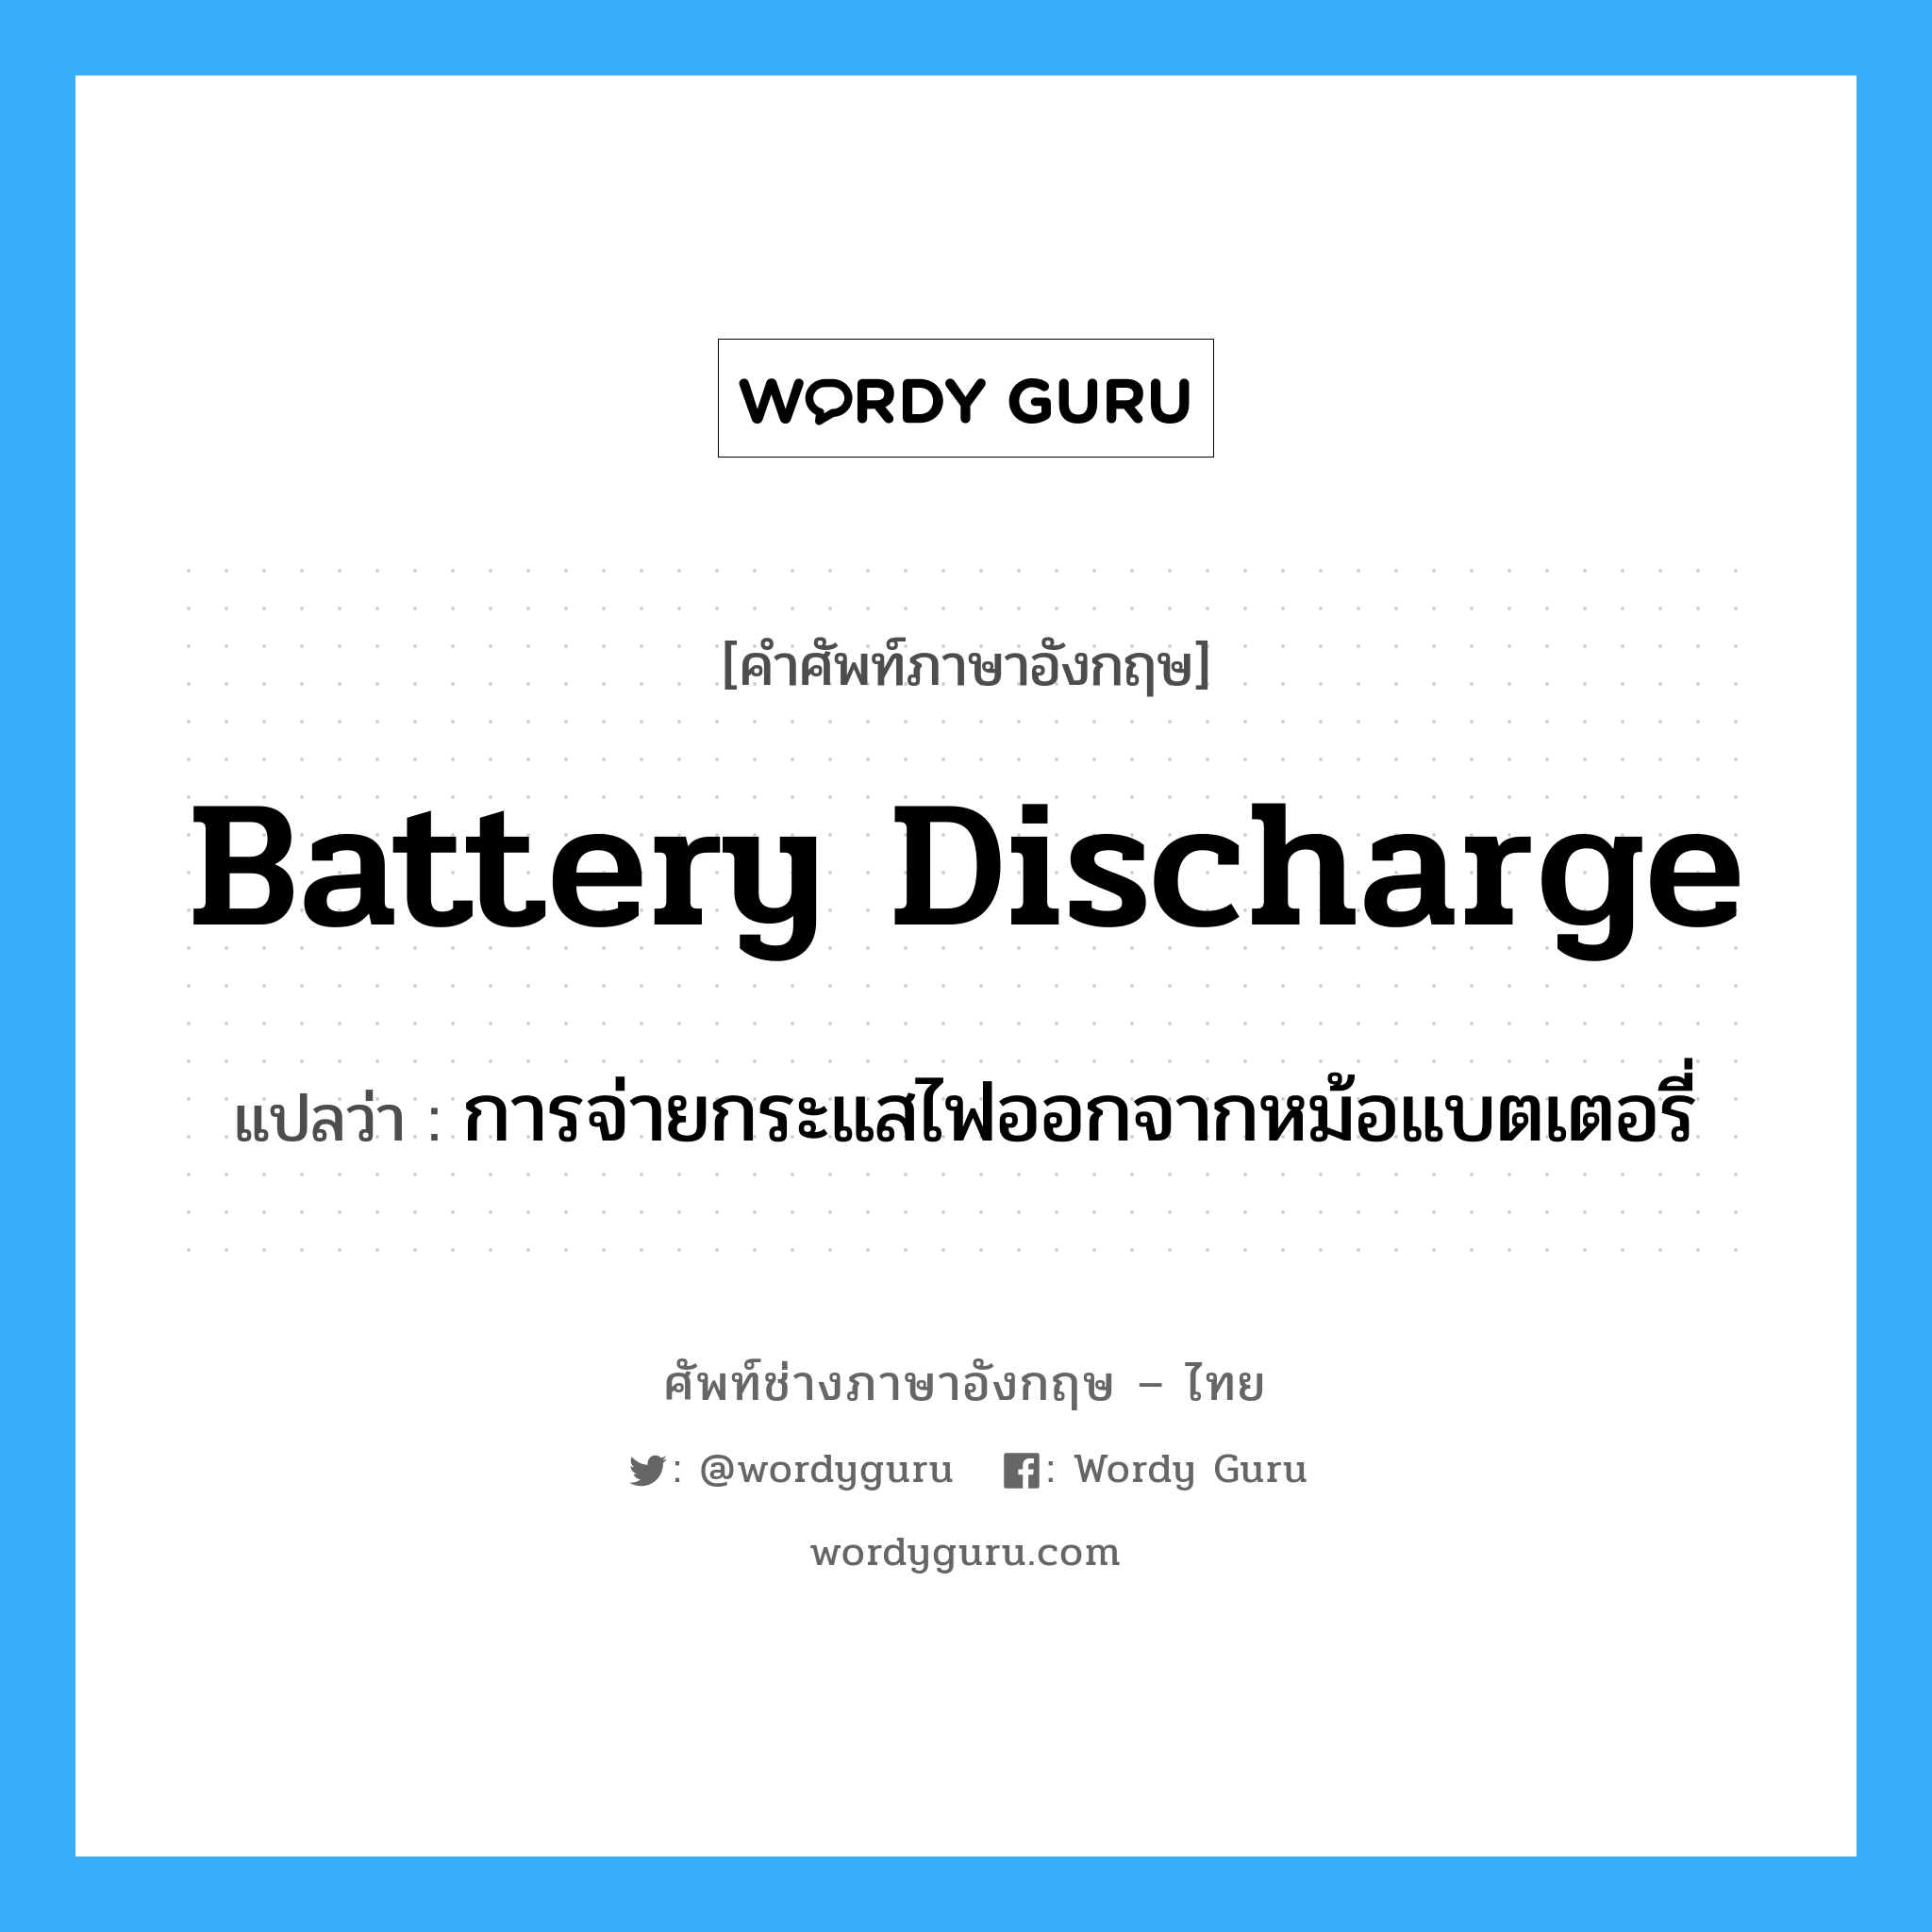 การจ่ายกระแสไฟออกจากหม้อแบตเตอรี่ ภาษาอังกฤษ?, คำศัพท์ช่างภาษาอังกฤษ - ไทย การจ่ายกระแสไฟออกจากหม้อแบตเตอรี่ คำศัพท์ภาษาอังกฤษ การจ่ายกระแสไฟออกจากหม้อแบตเตอรี่ แปลว่า battery discharge